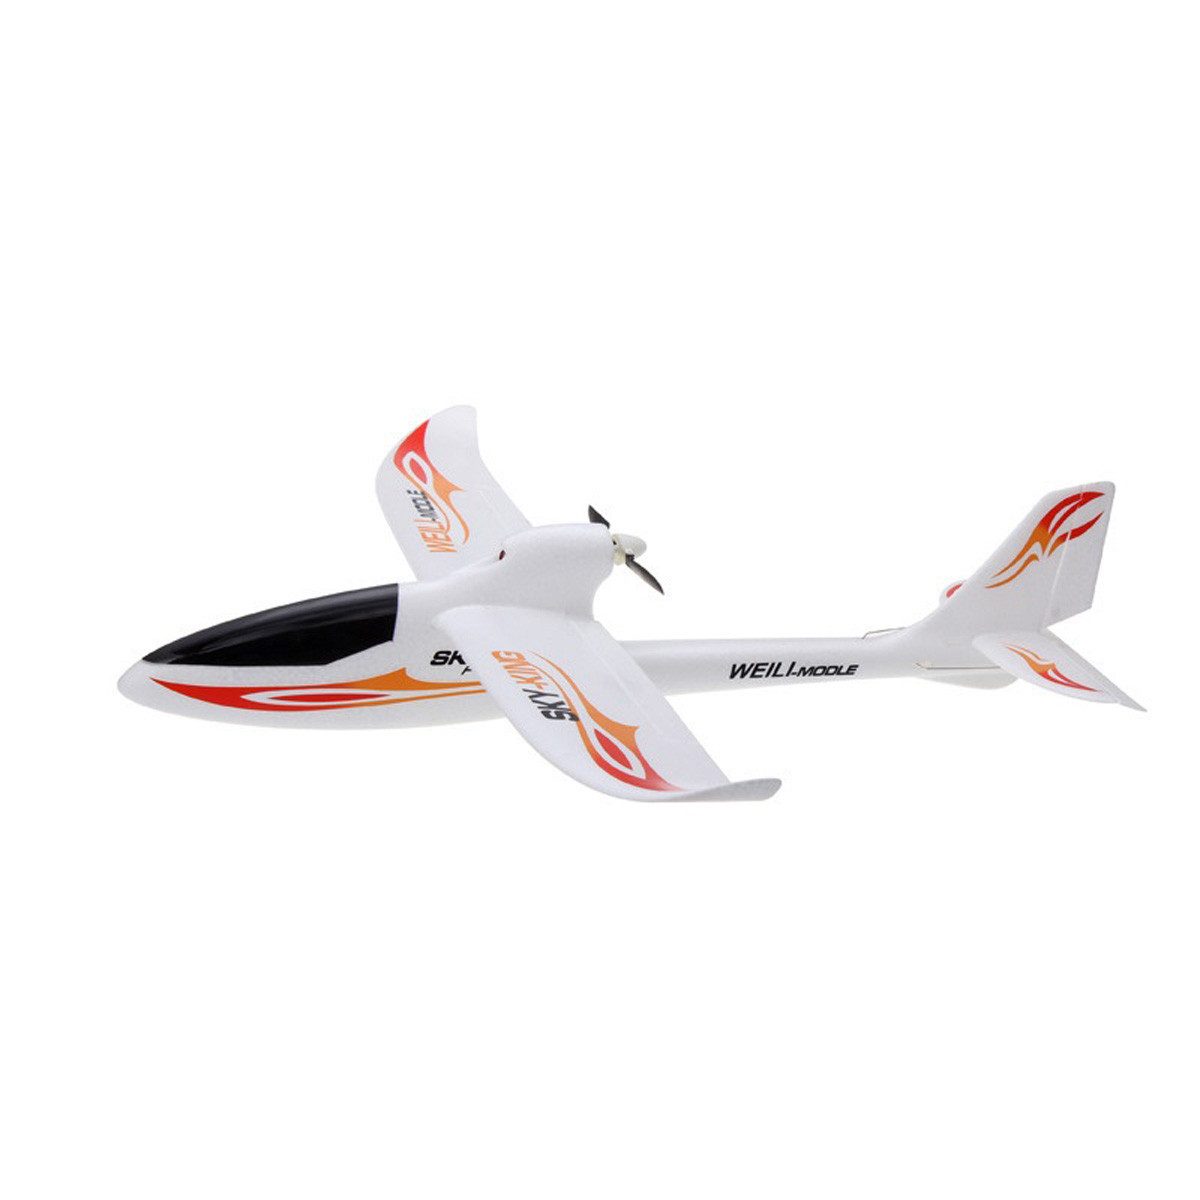 yozhiqu Modellflugzeug Mehrkanaliges Pushback-Hochgeschwindigkeits Segelflugzeug, mit sechsachsige Gyroskop, ferngesteuerten Flugzeug Modell Spielzeug